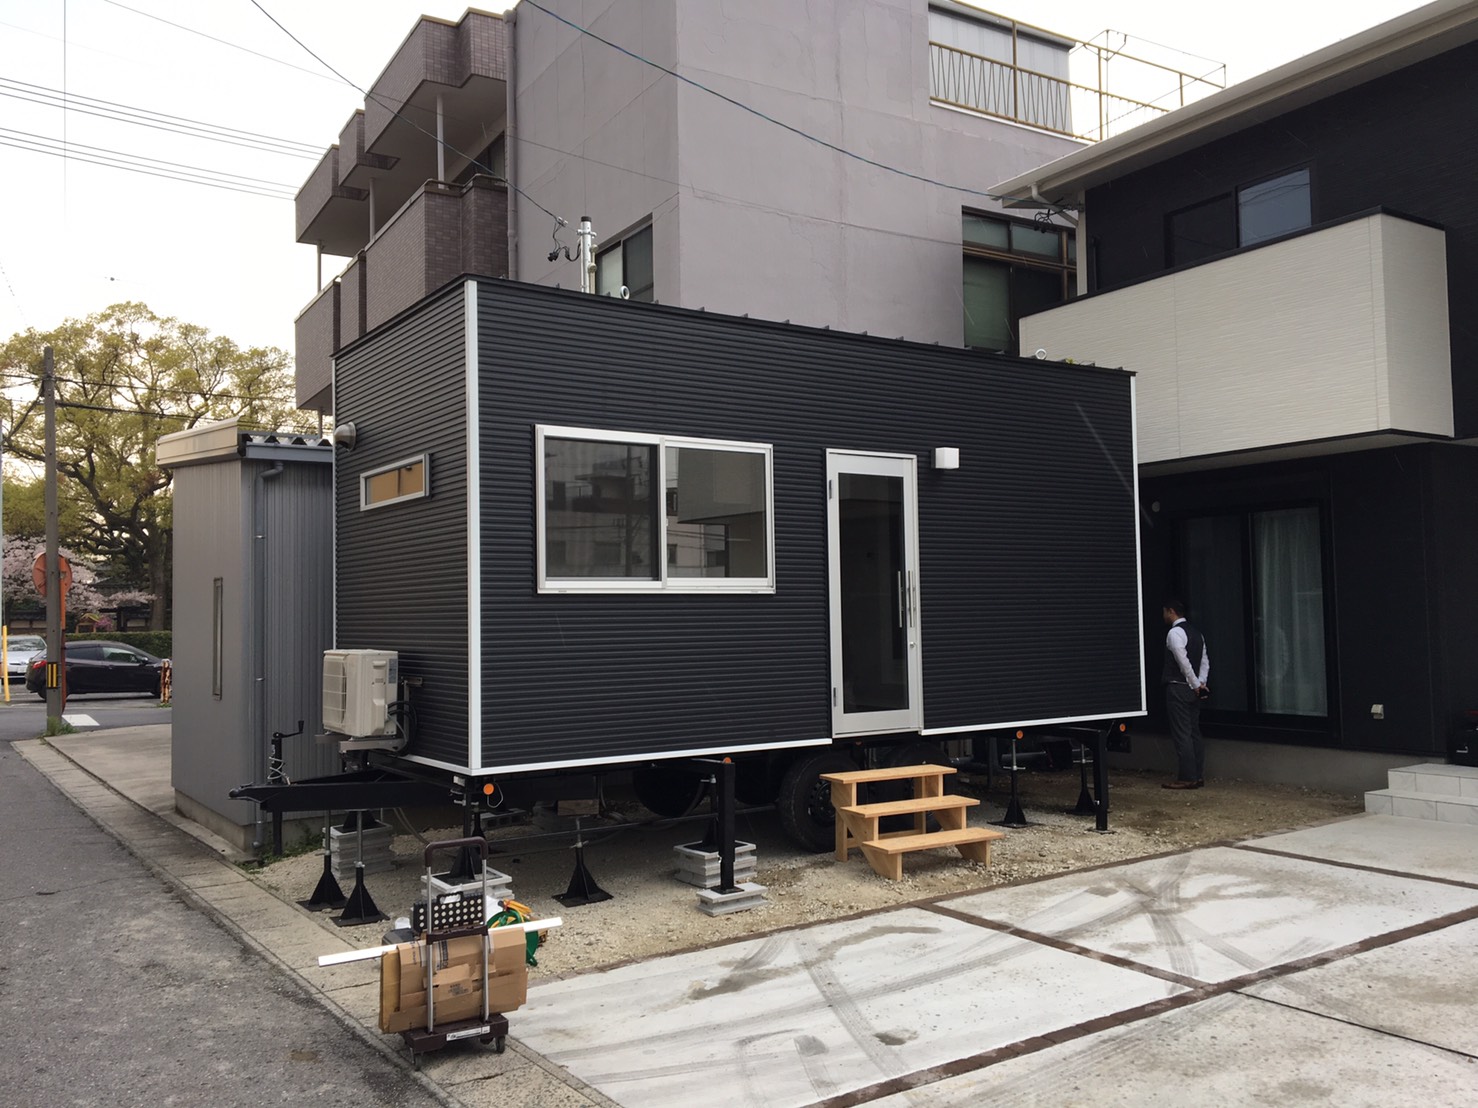 愛知県碧南市に住居タイプのトレーラーハウスをご納車です Nomad House